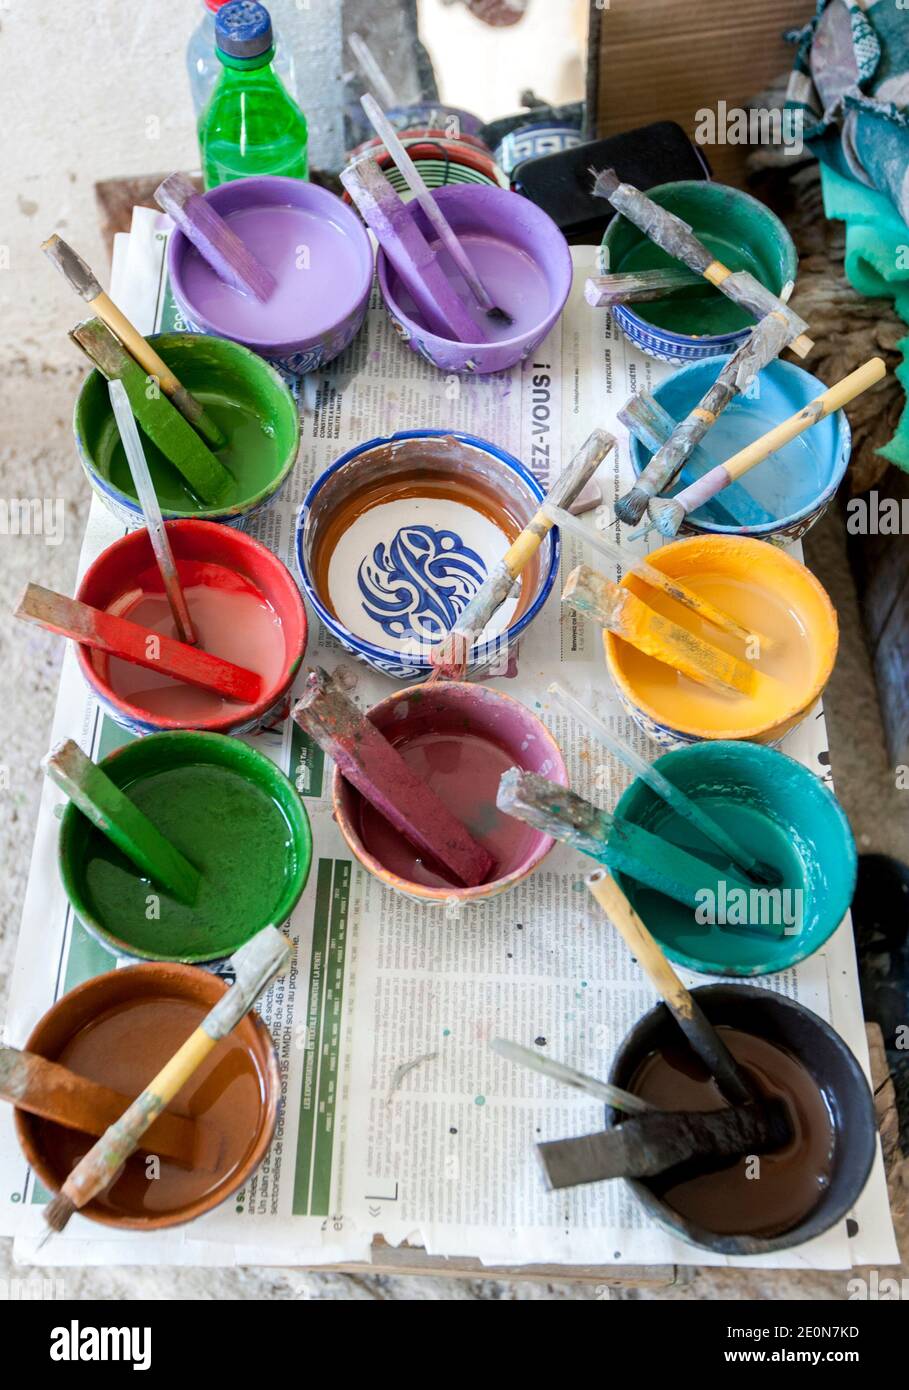 Une variété colorée de pots de peinture à l'usine Art Naji à Fès, au Maroc. Les peintures sont utilisées pour peindre à la main des ornements en céramique. Banque D'Images